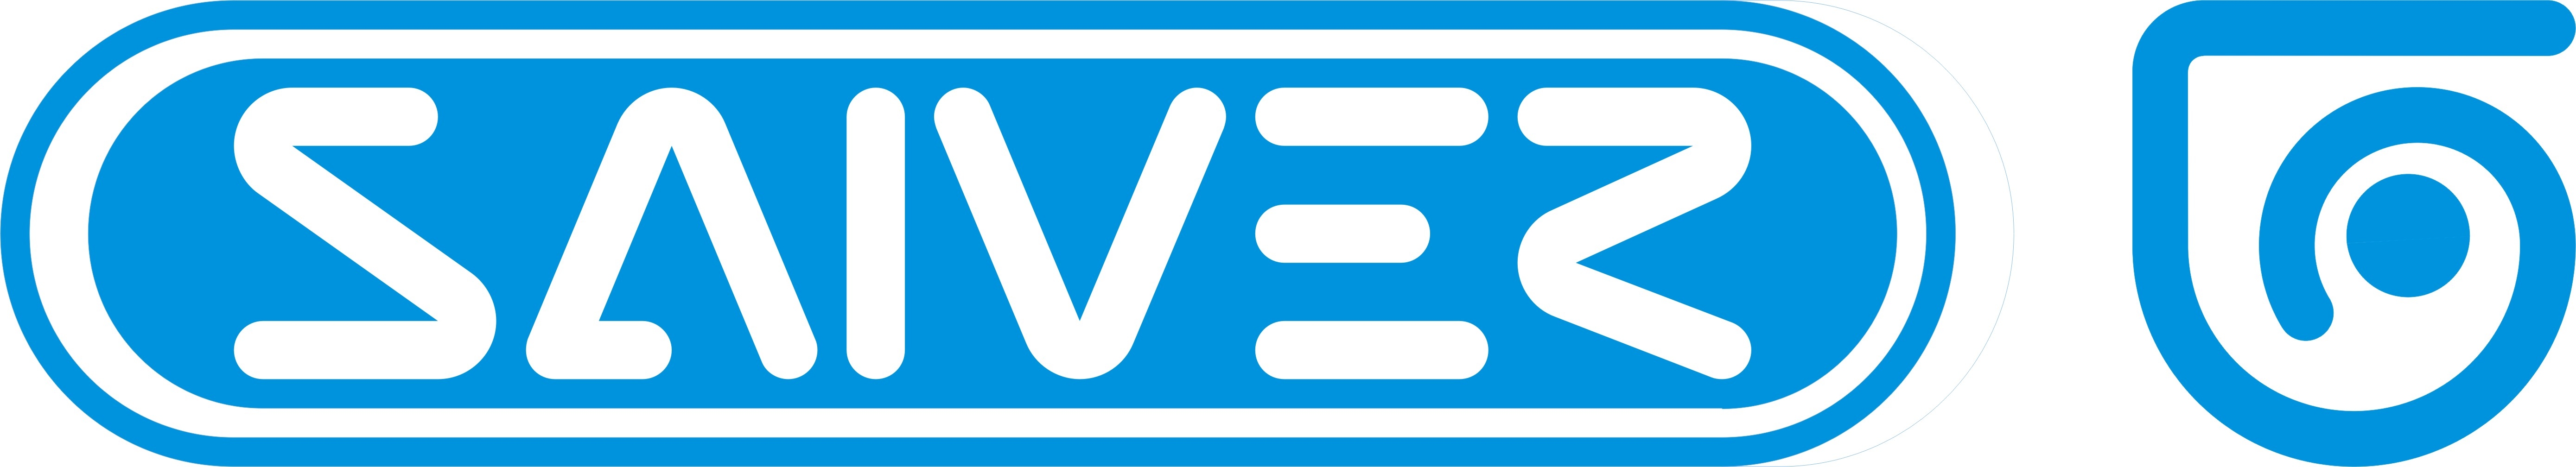 Saiver SRL - Logo - 1